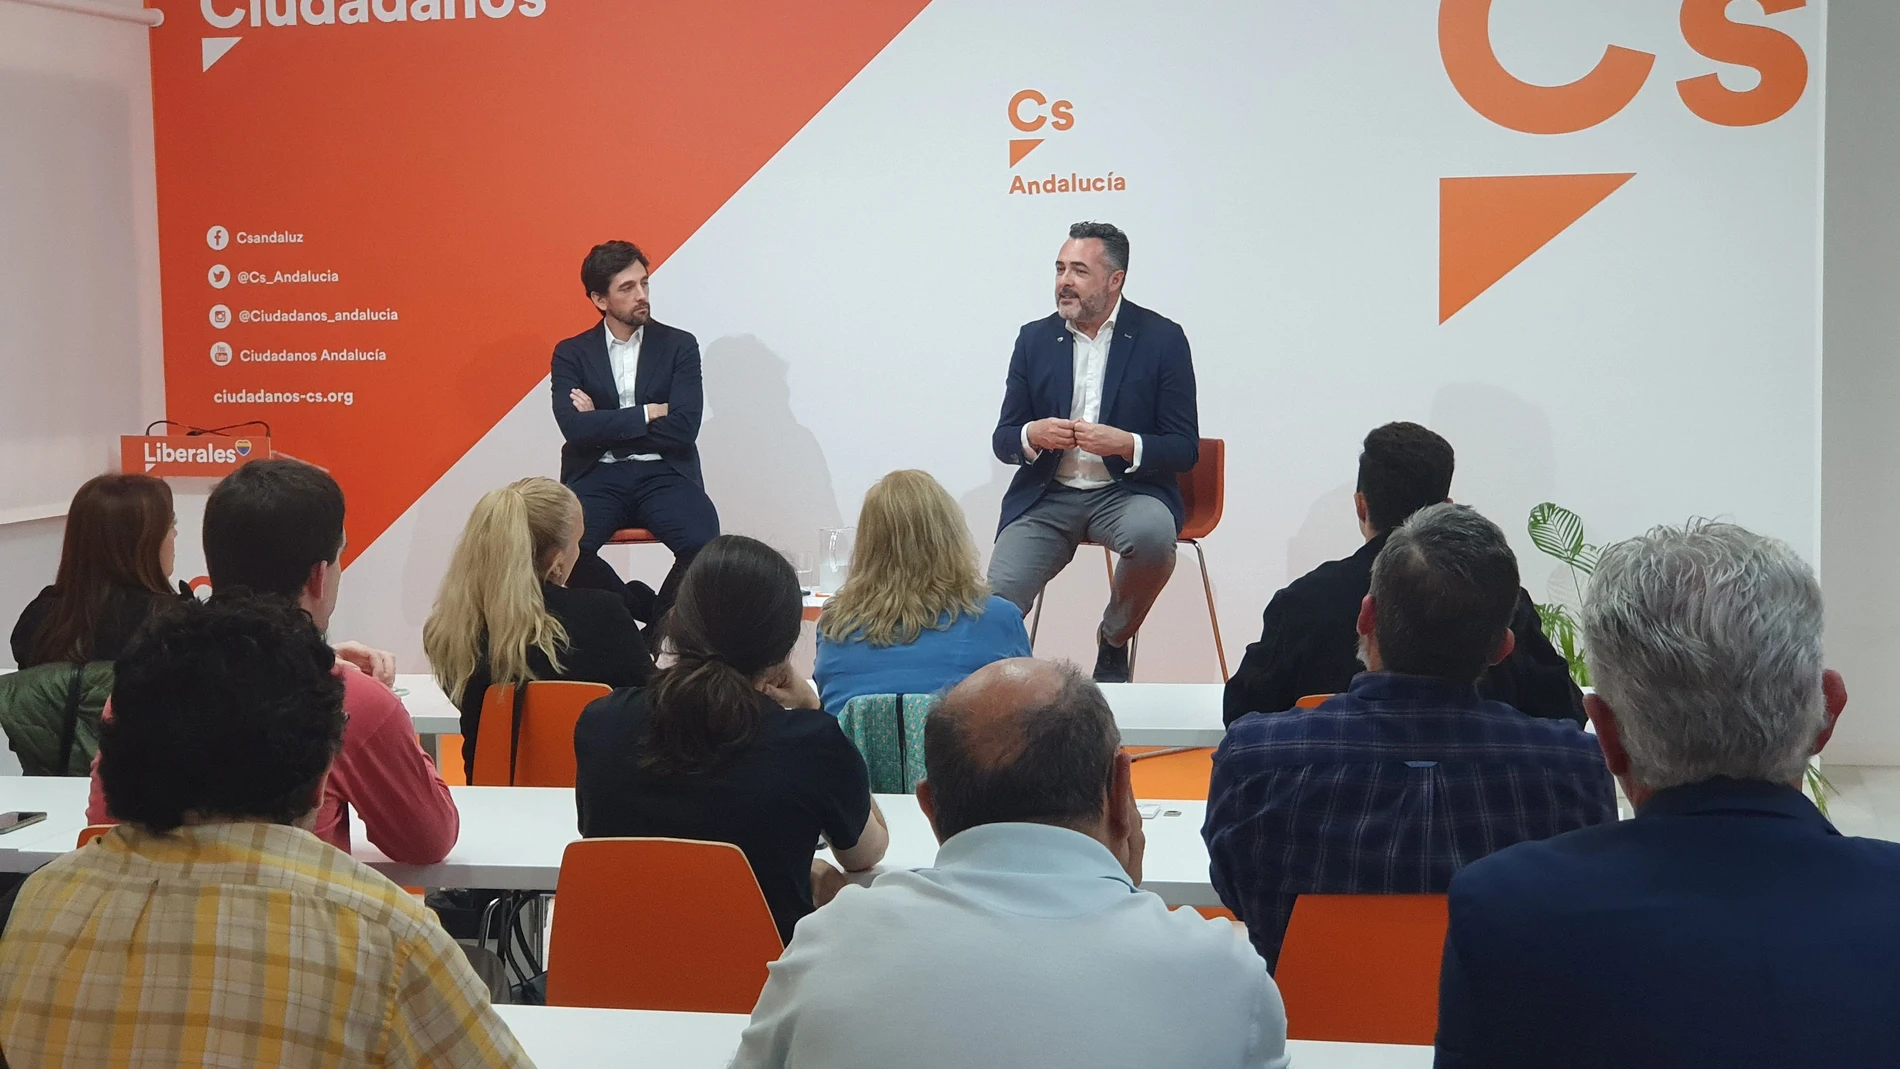 La sede de Ciudadanos (Cs) en Andalucía acogió en Sevilla una nueva parada de la gira 'Destino Refundación', un proceso donde el partido afirma ser "alternativa".CS02/11/2022